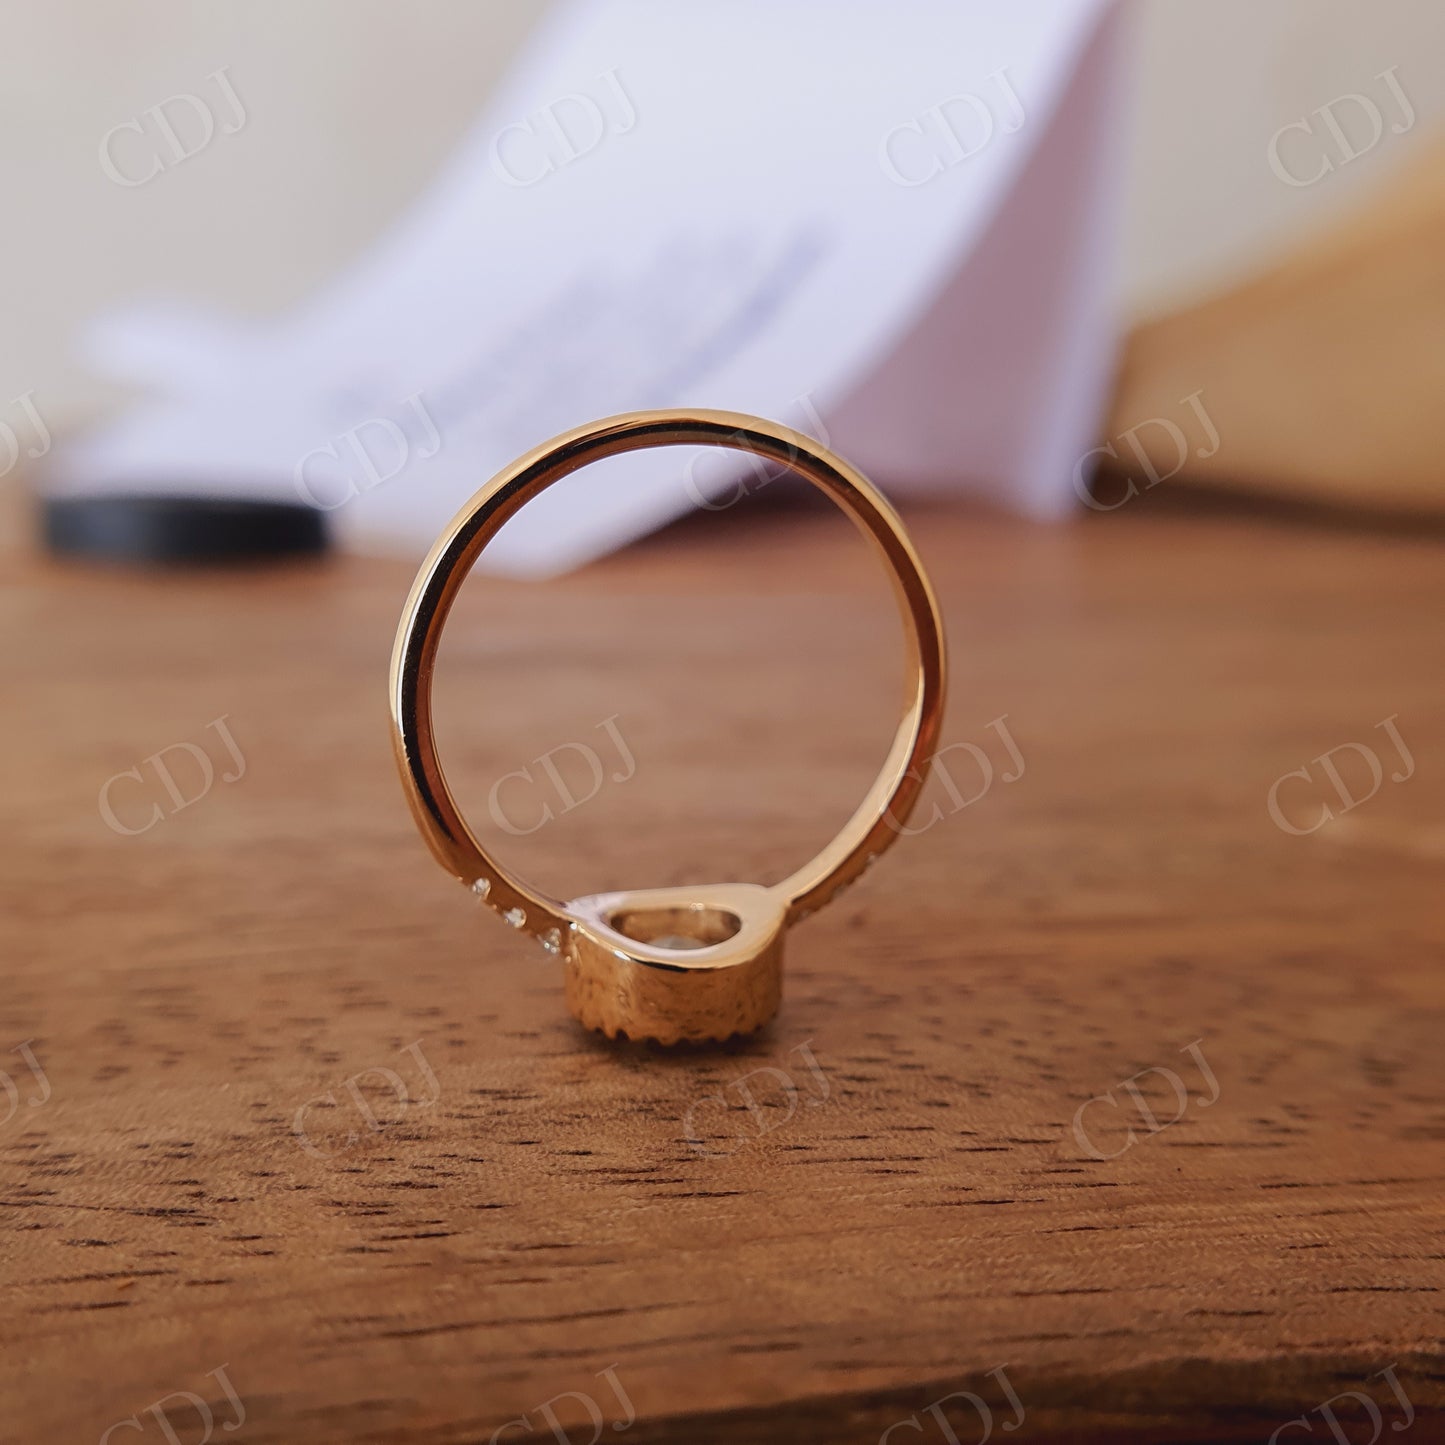 1.25CT Round Rose Cut Moissanite Engagement Ring  customdiamjewel   